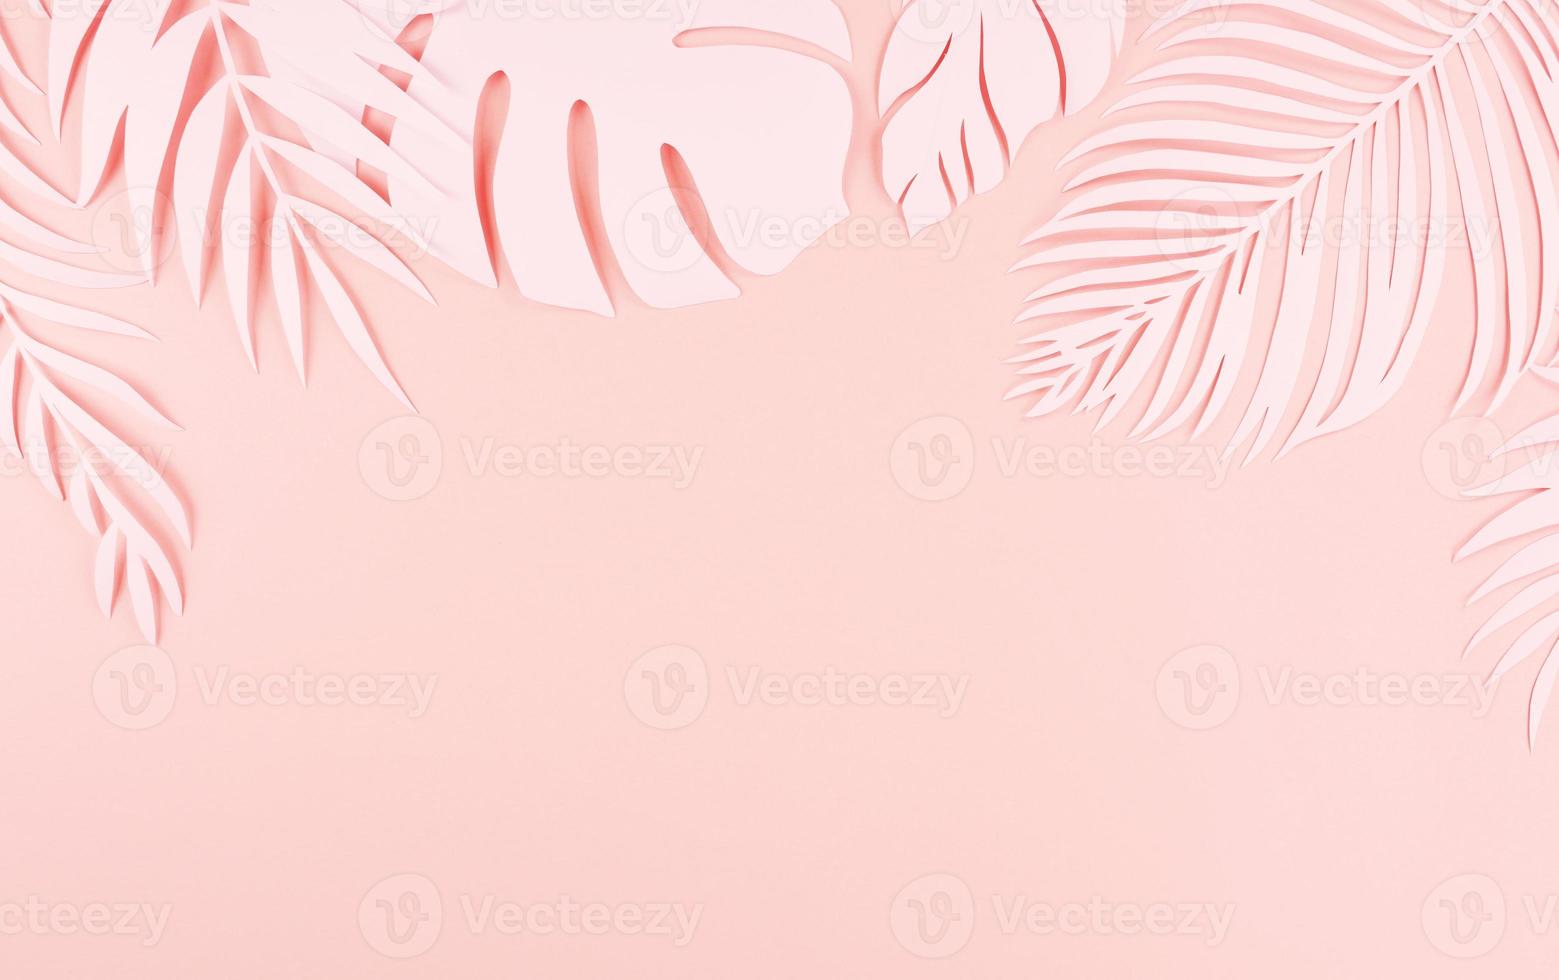 hojas de palma de corte de papel, concepto de papel de verano tropical foto